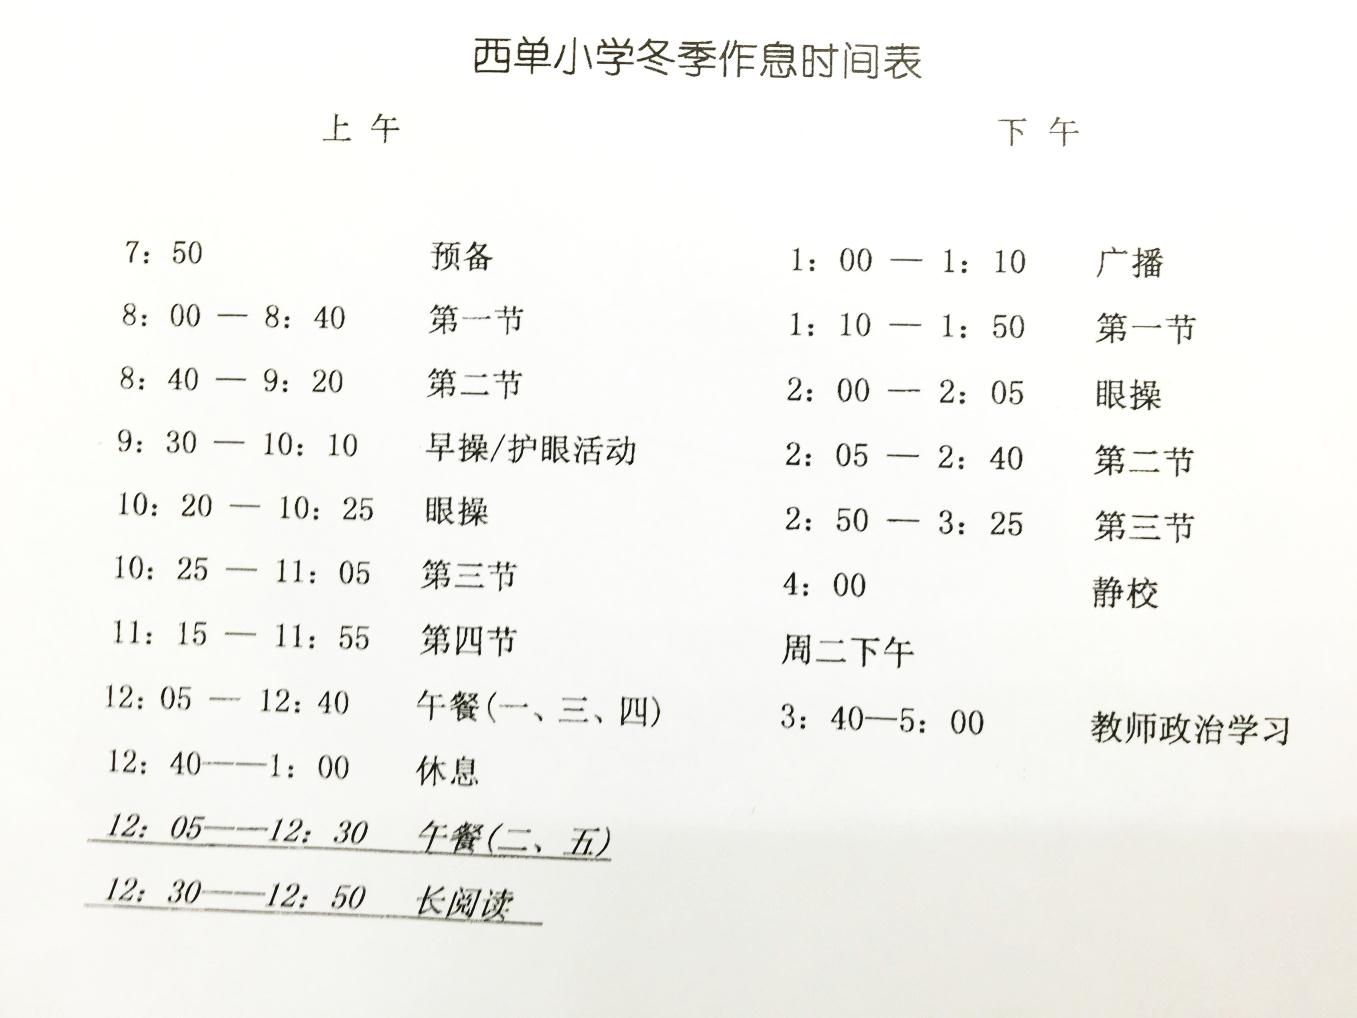 北京市西城区西单小学冬季作息时间表